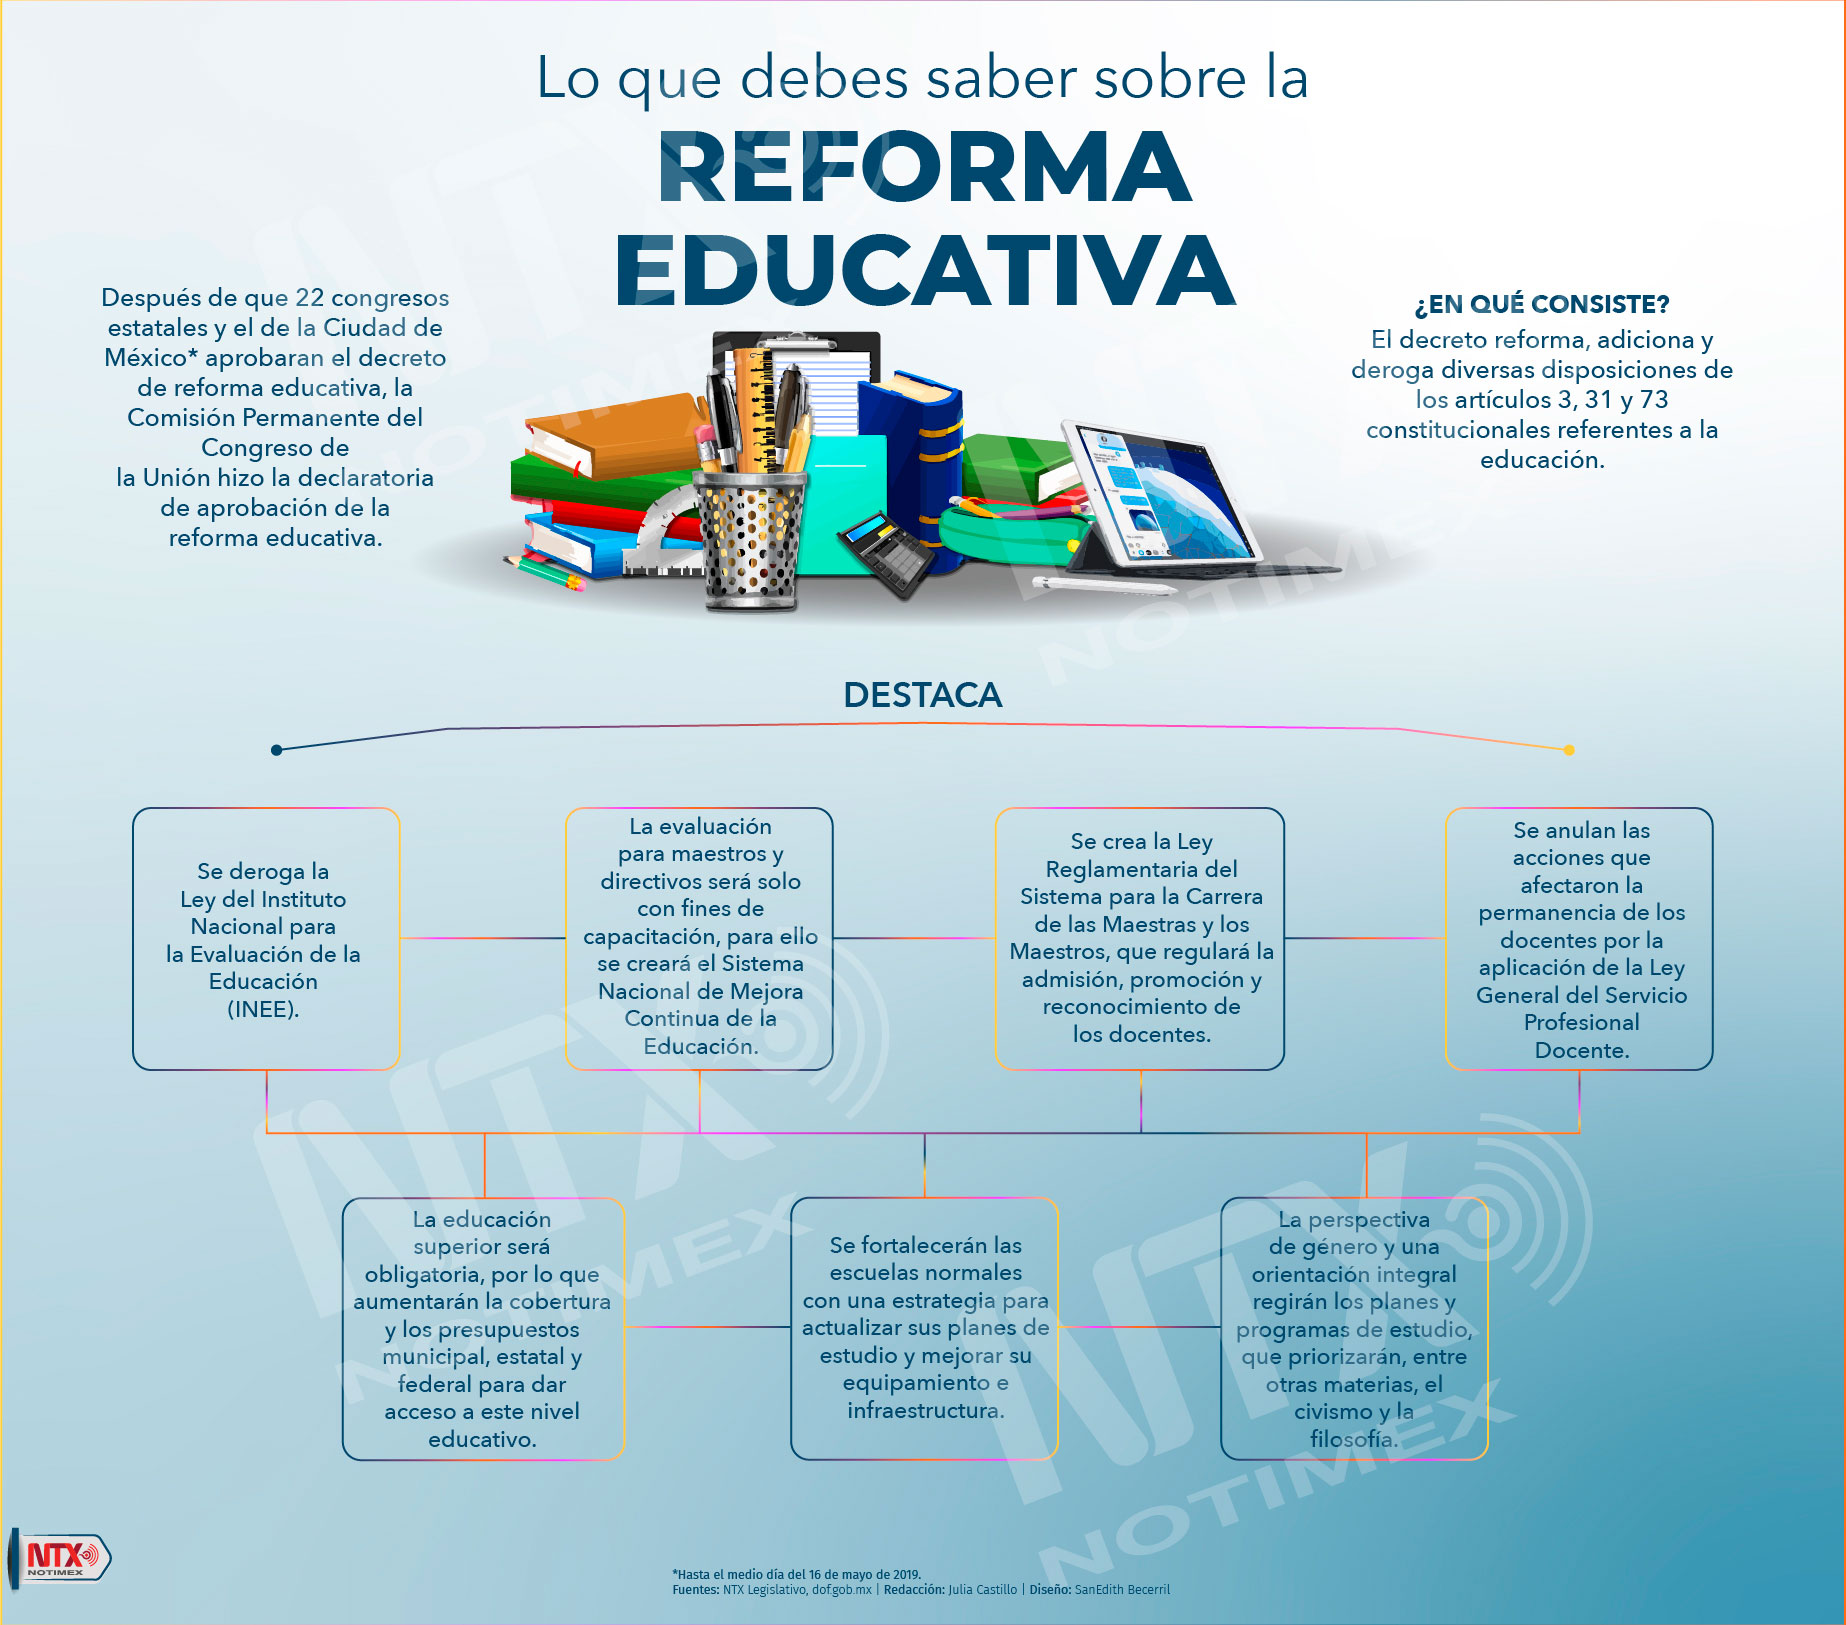 Lo que debes sabes sobre la Reforma Educativa